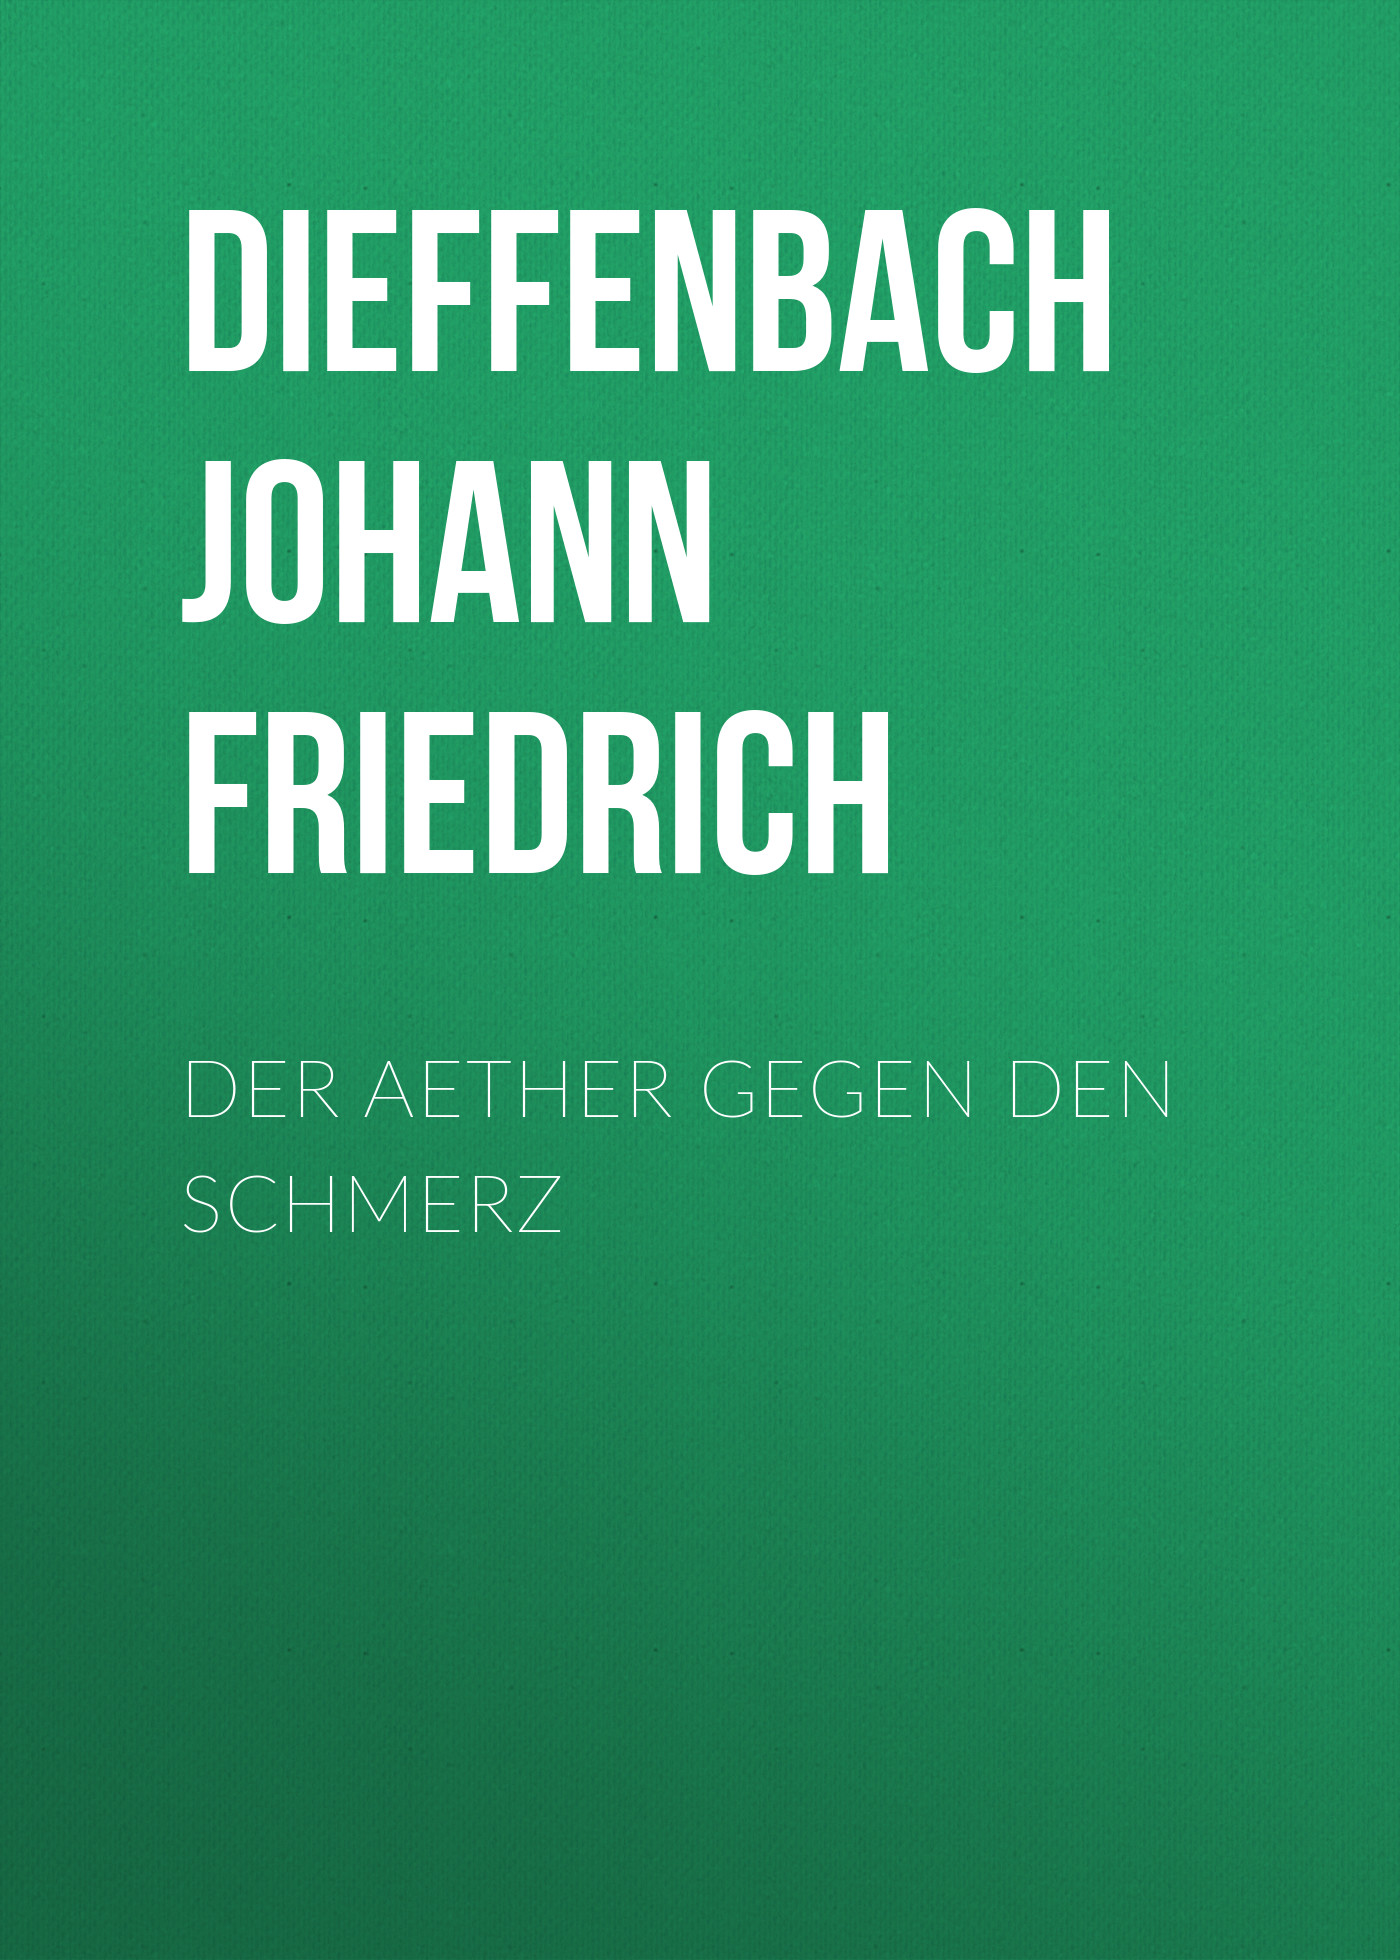 Книга Der Aether gegen den Schmerz из серии , созданная Johann Dieffenbach, может относится к жанру Зарубежная старинная литература, Зарубежная классика. Стоимость электронной книги Der Aether gegen den Schmerz с идентификатором 24548300 составляет 0 руб.